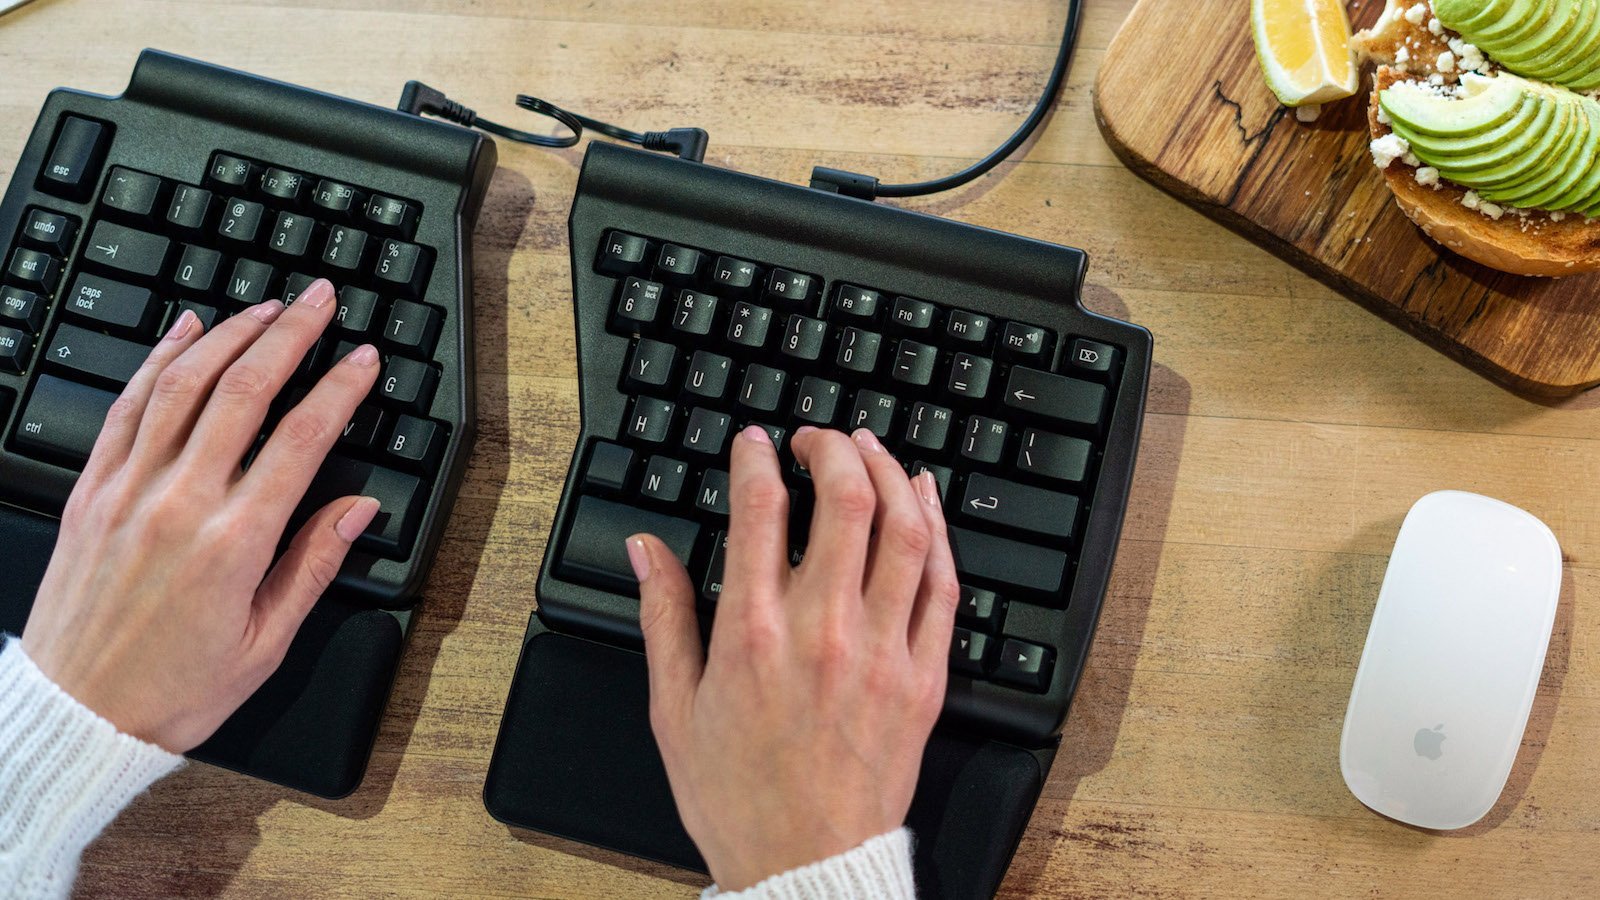 Programmable Ergo Pro ergonomic mechanical keyboard provides a range of key adjustments